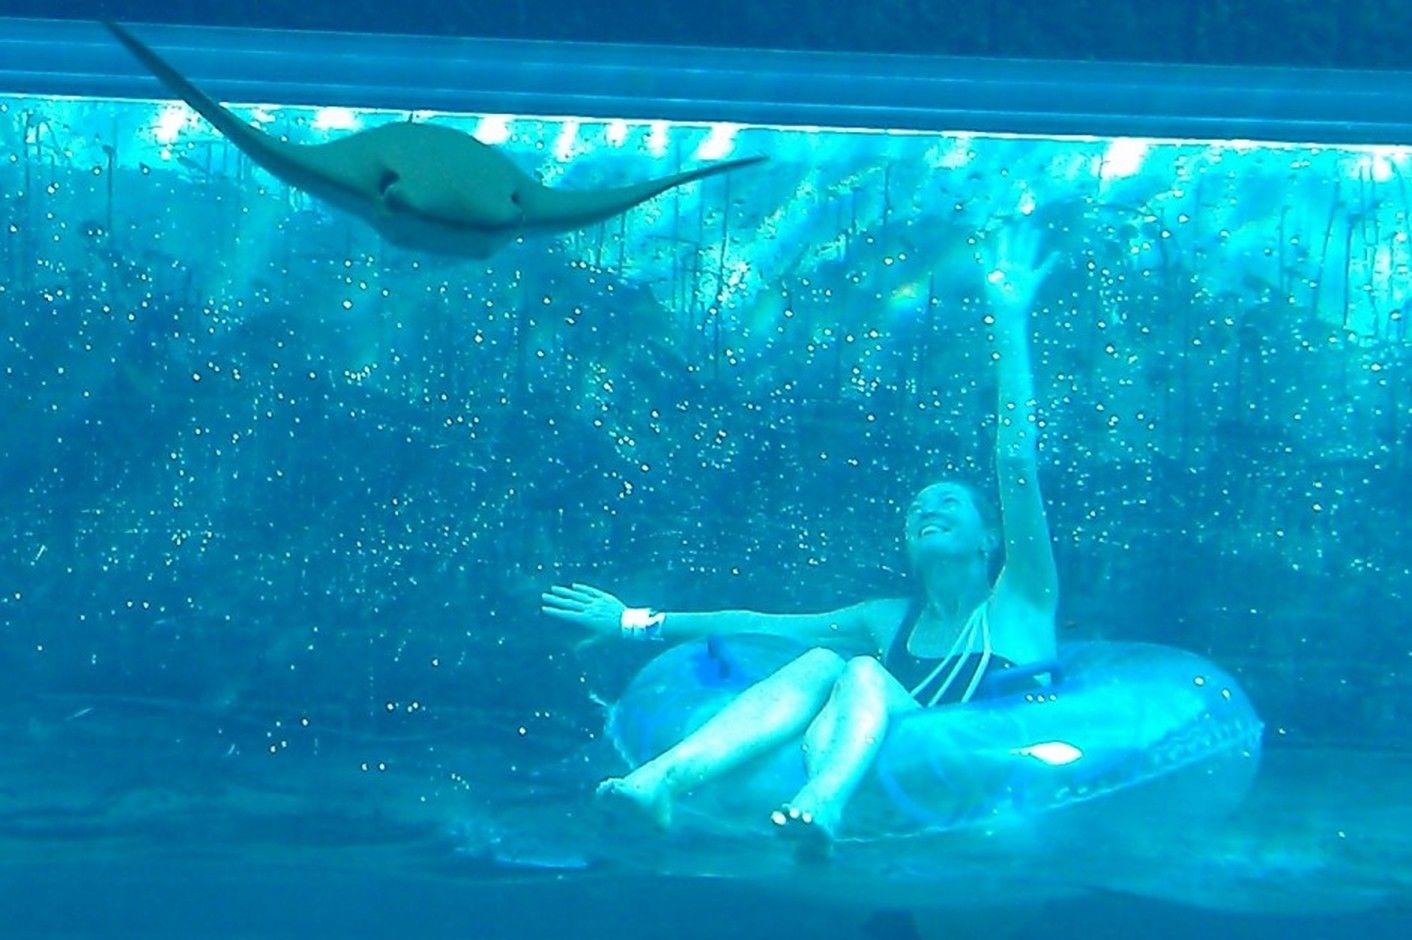 Plavání s delfíny